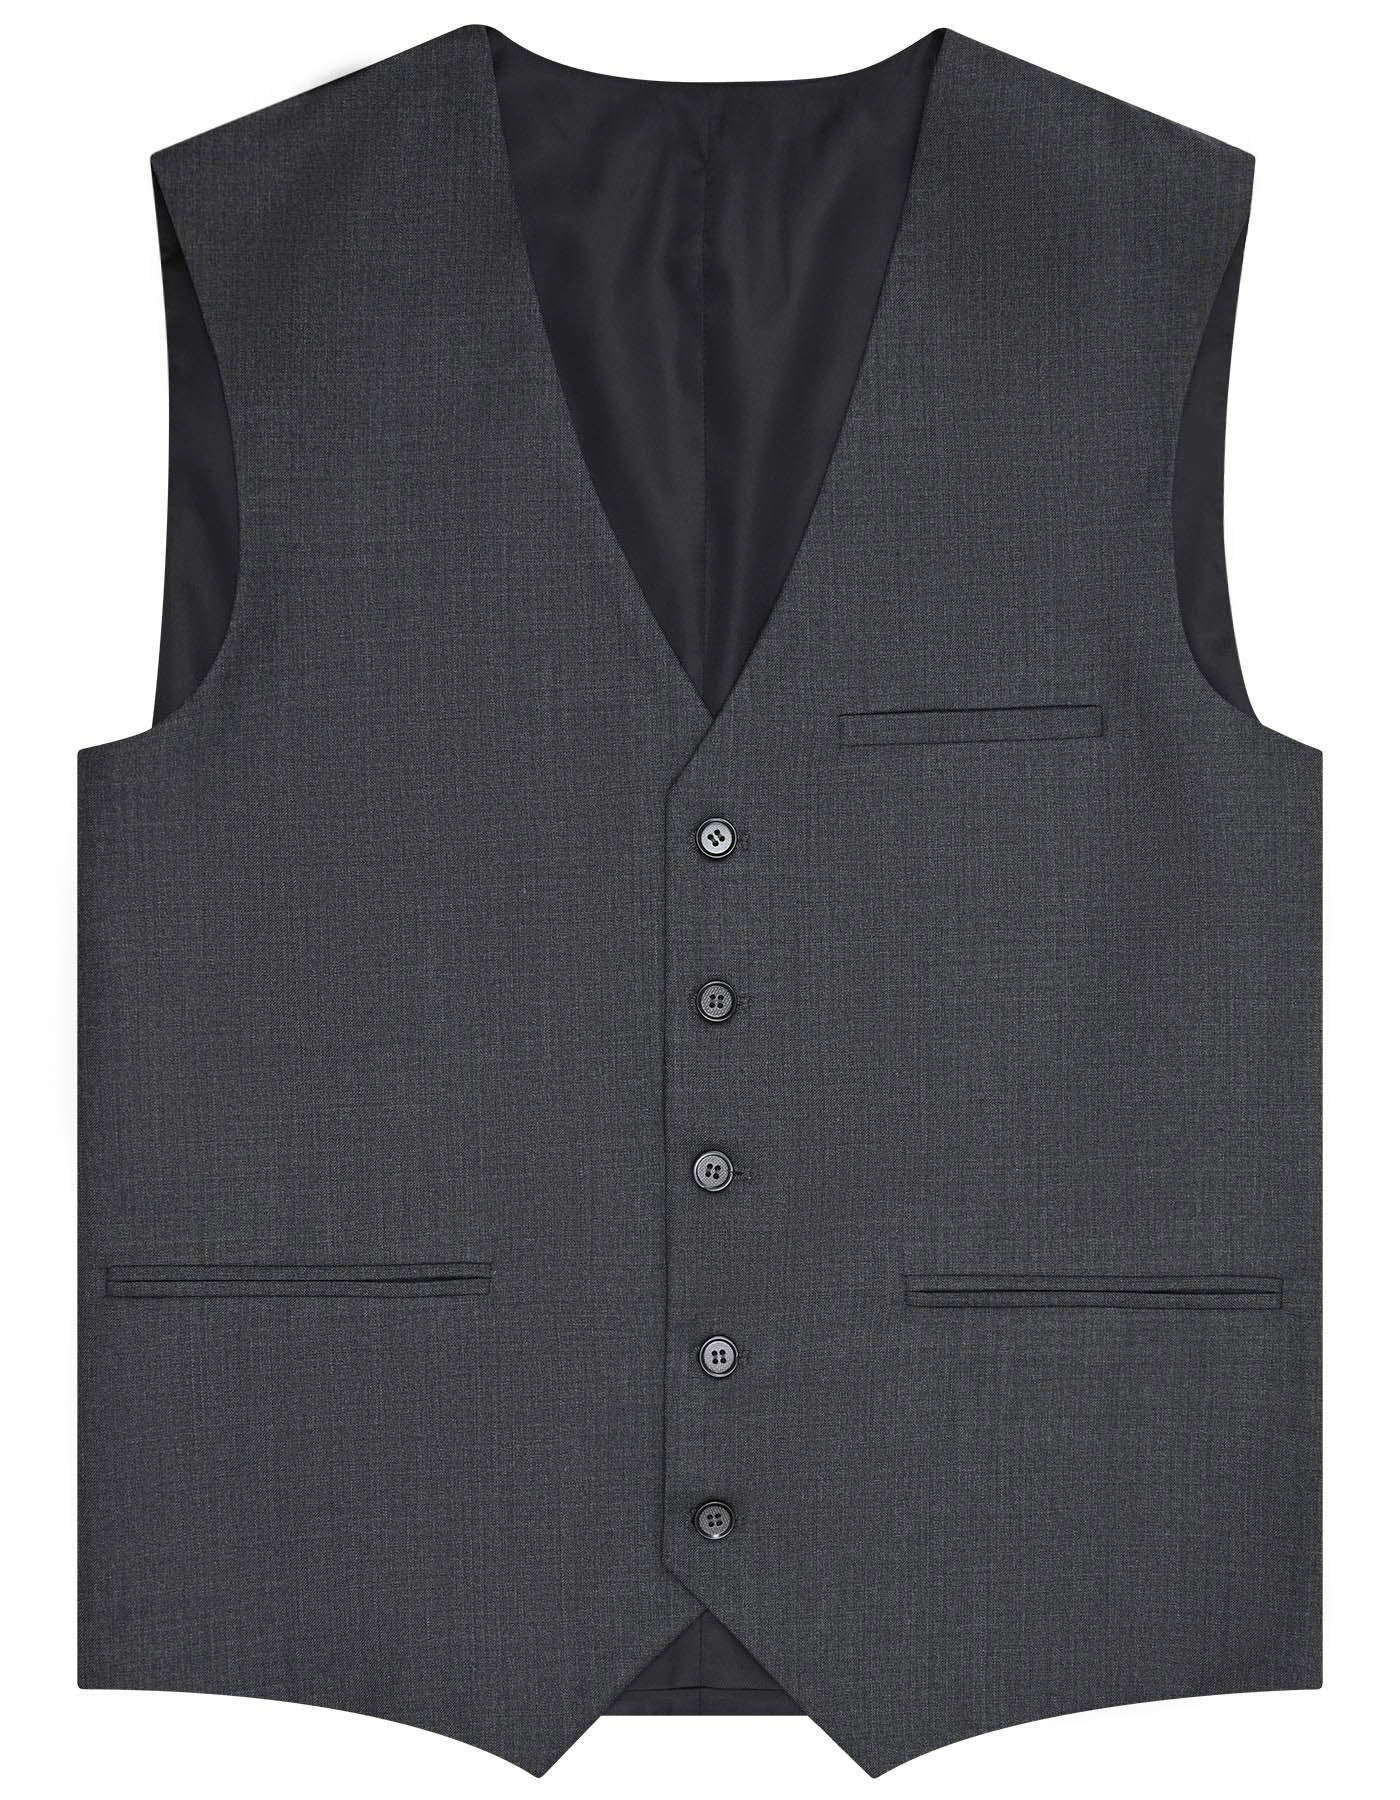 Charcoal Texture Classic Fit Suit For Men |Uniworth